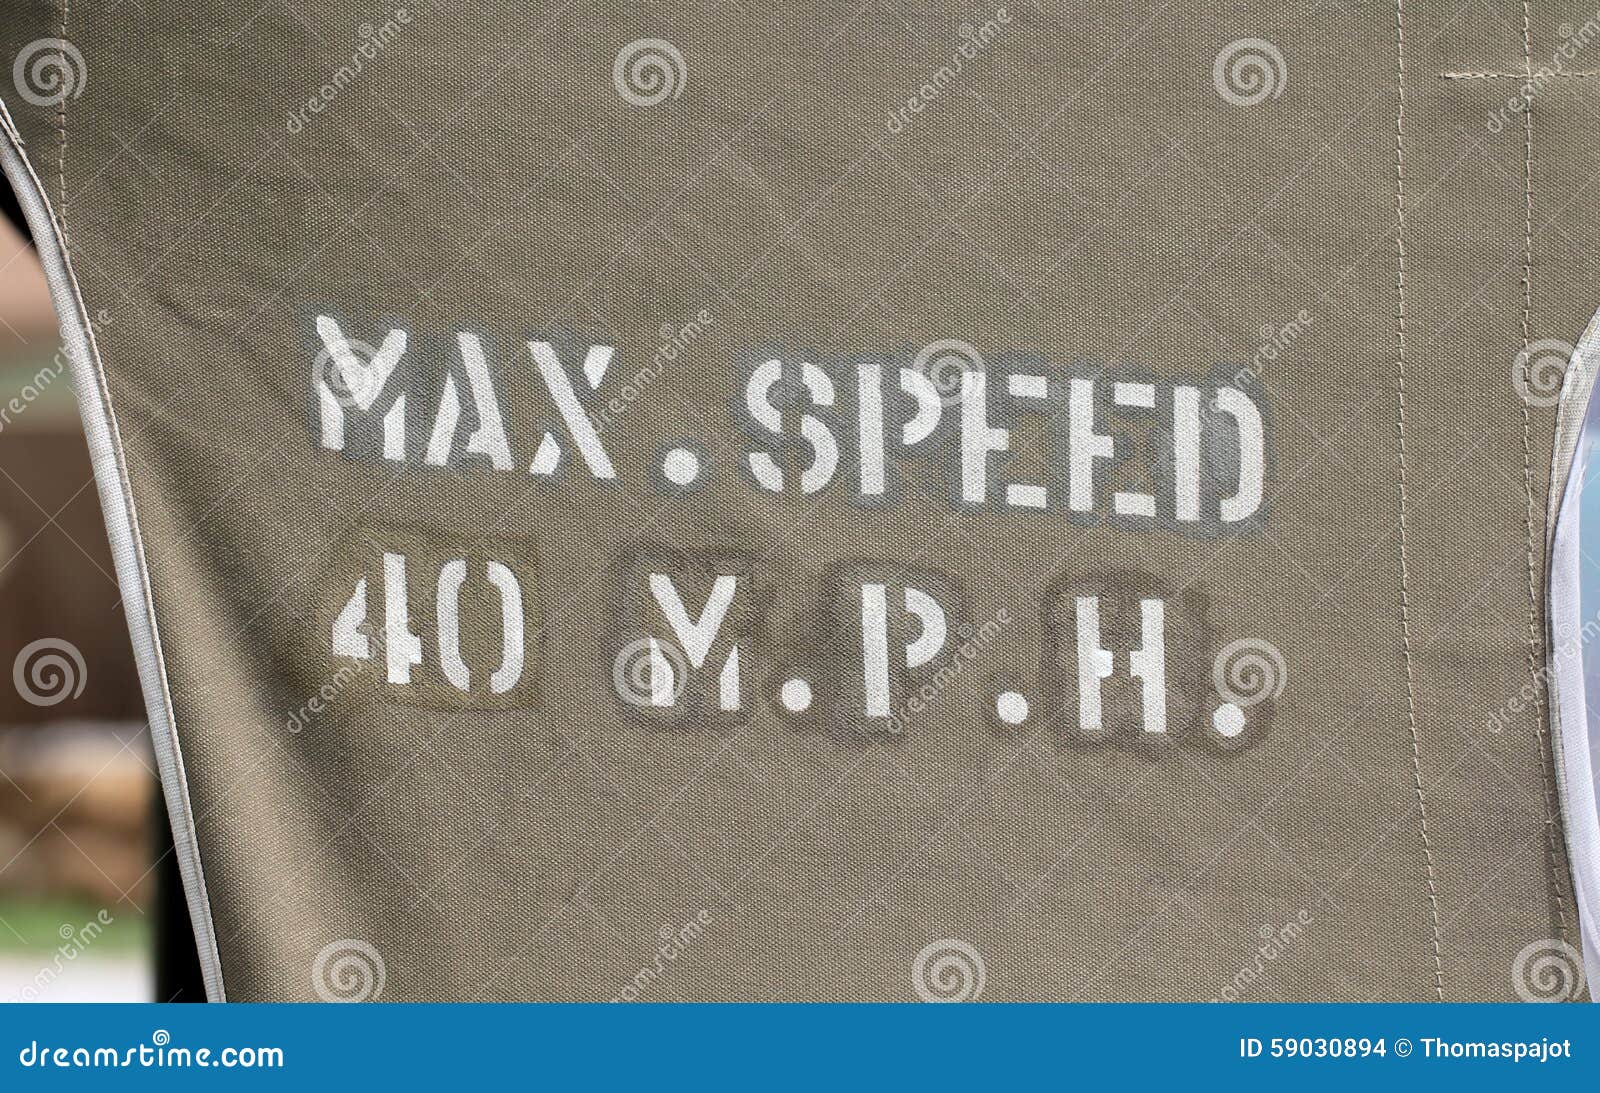 max speed 40 mph